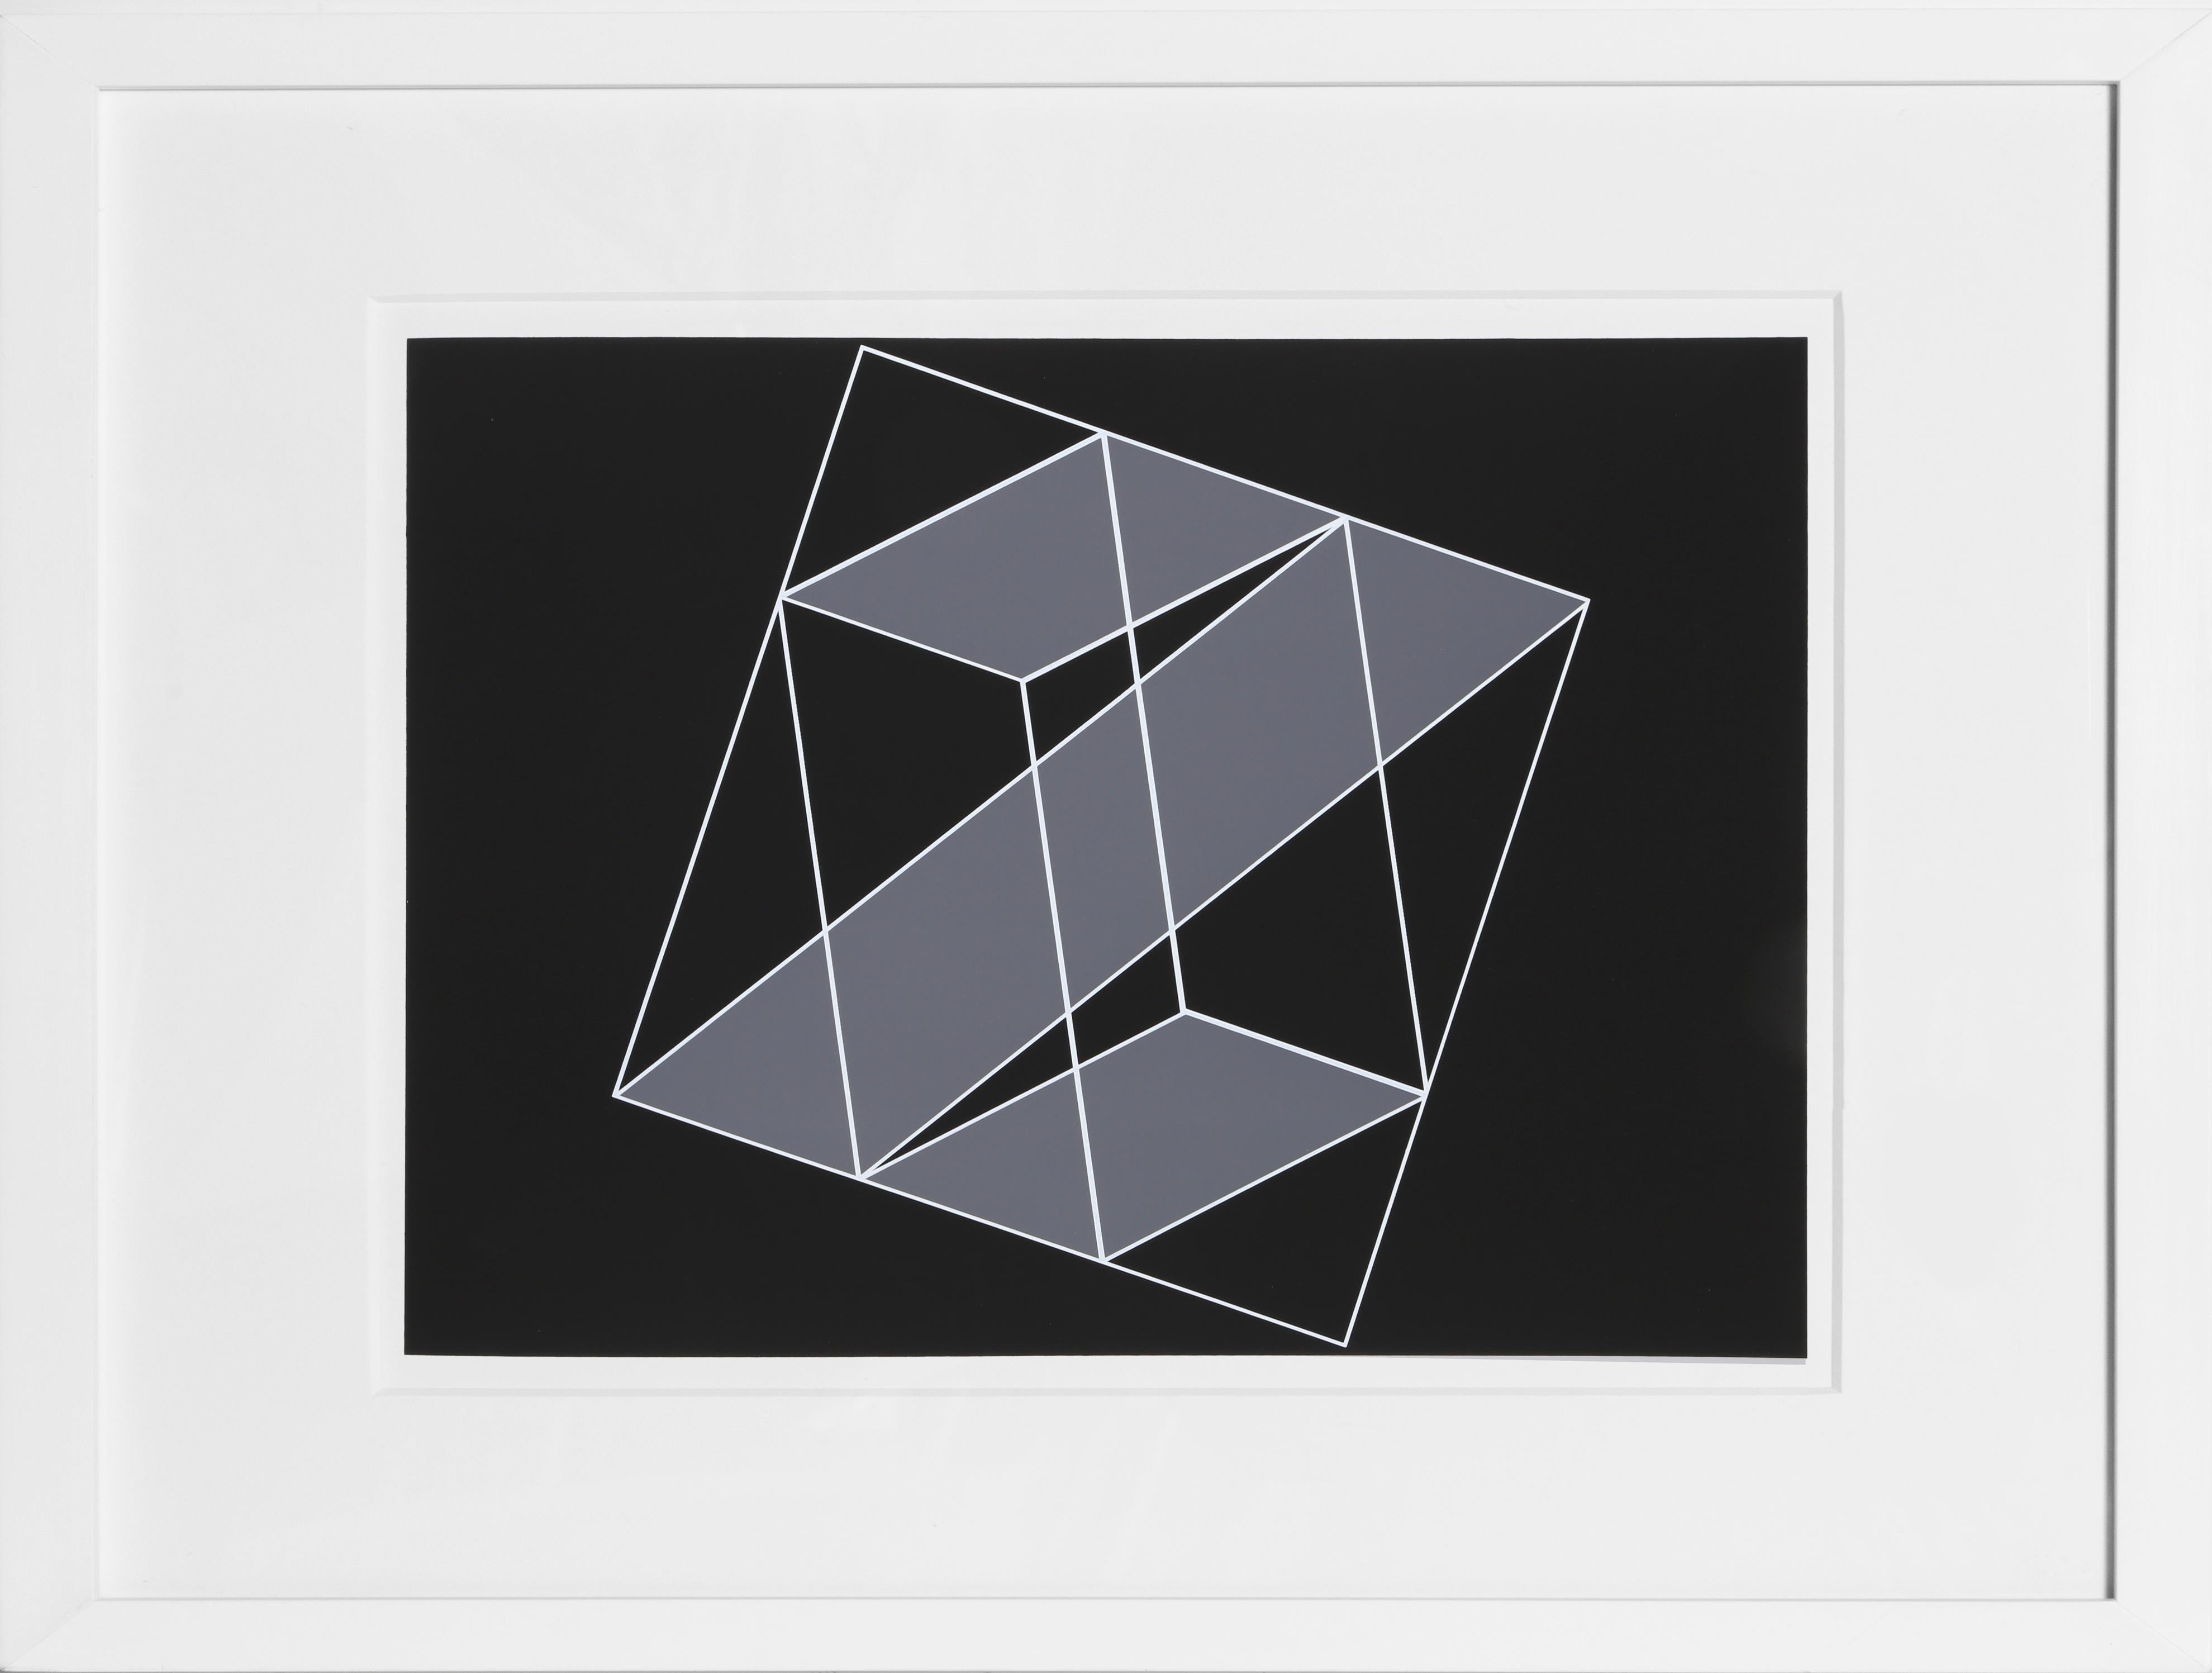 Extrait du portfolio "Formulation : Articulation" créé par Josef Albers en 1972. Cette série monumentale se compose de 127 sérigraphies originales qui constituent une étude définitive des plus importantes théories de couleurs et de formes de